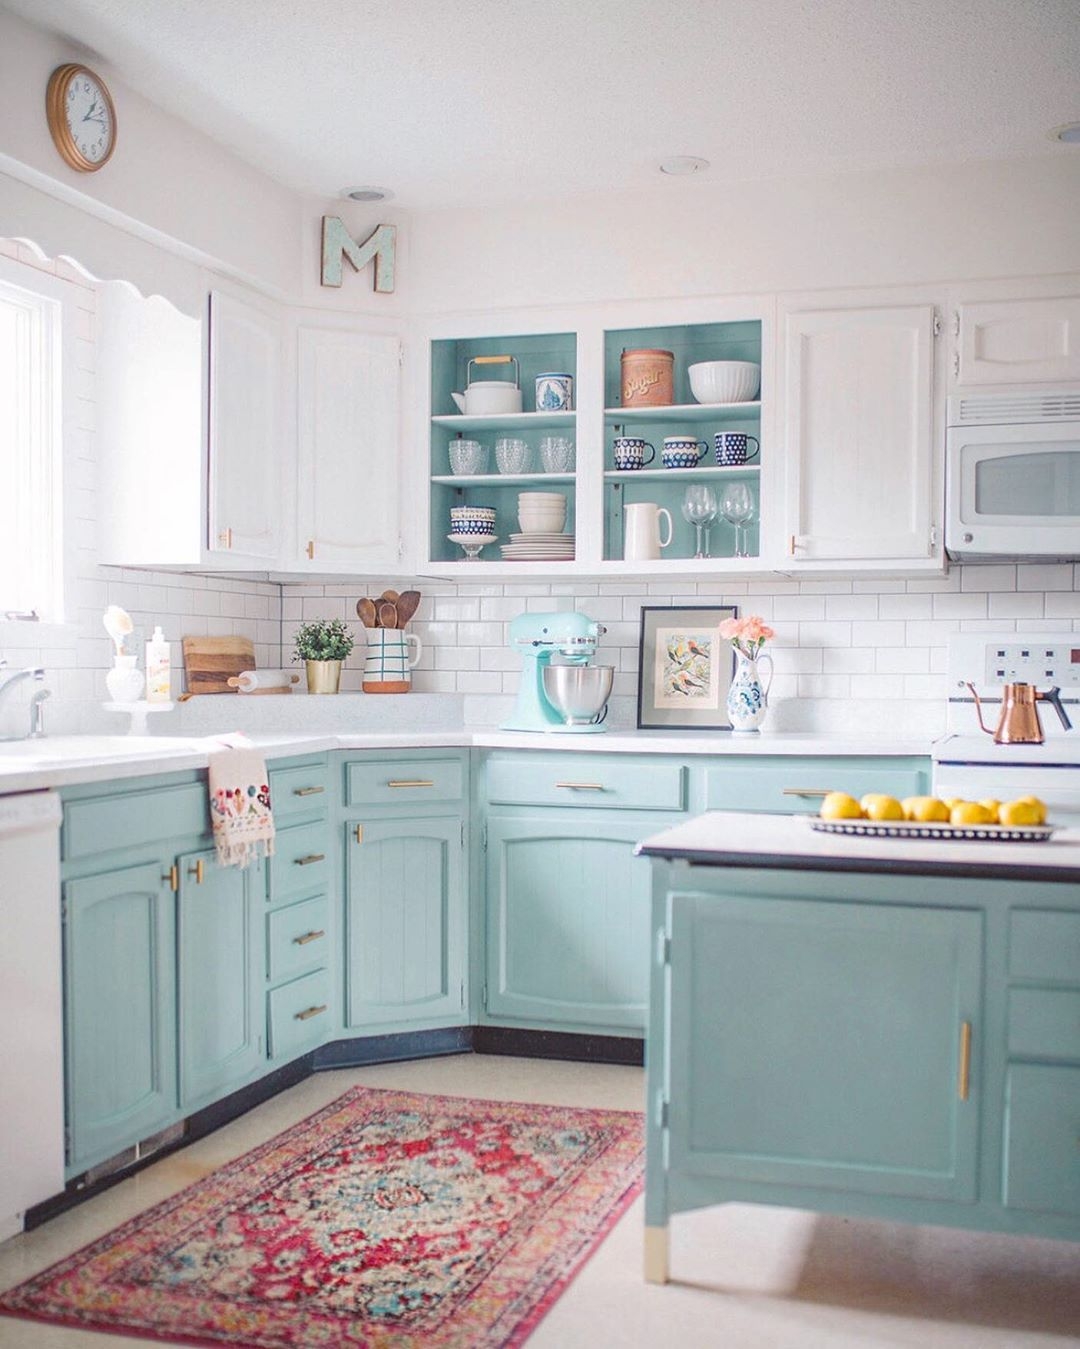 Với những căn bếp có gam màu trắng làm chủ đạo, bạn thử lựa chọn sơn tủ màu xanh bạc hà, gam màu như mang cả không khí tươi mát vào nhà của bạn